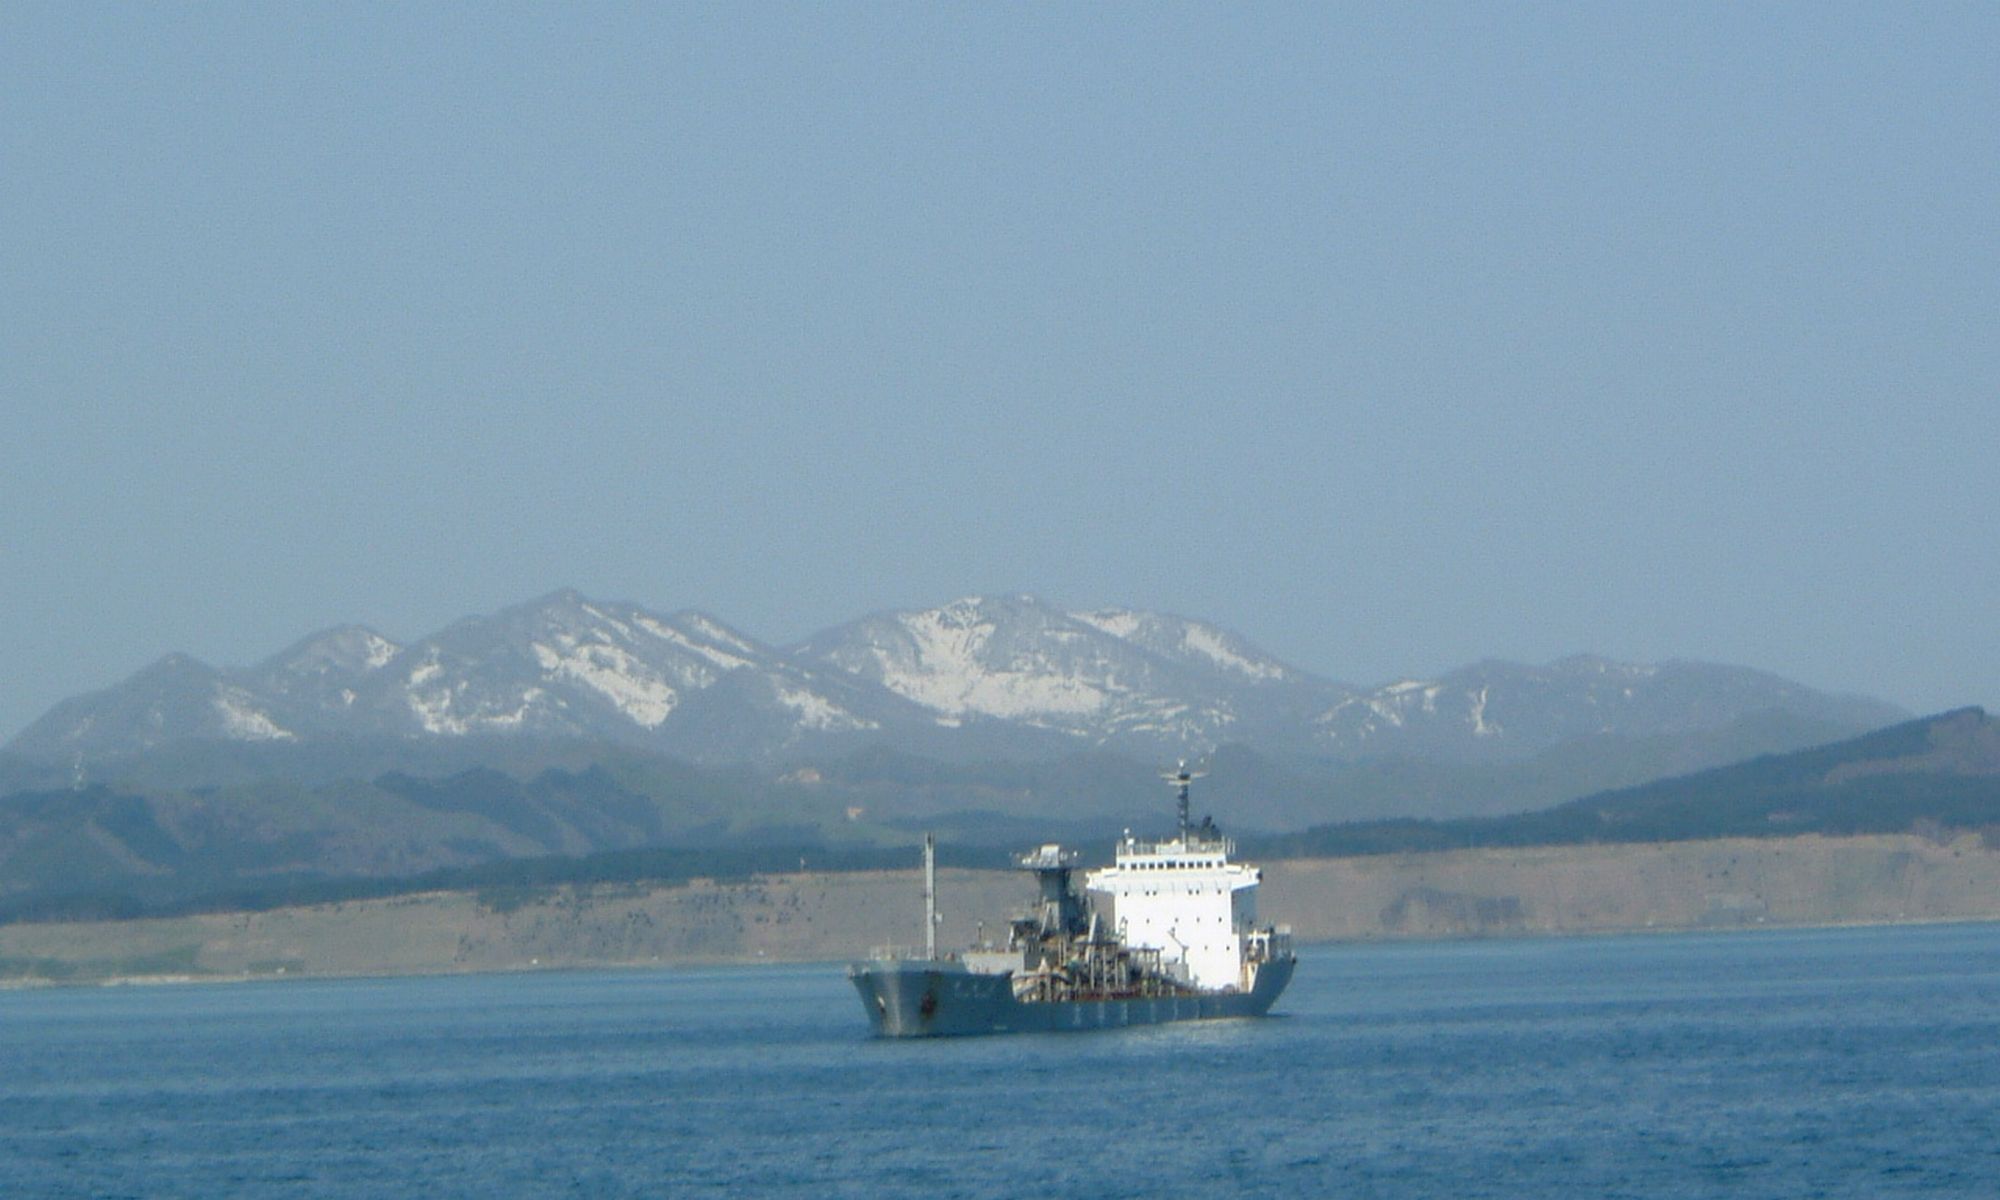 津軽海峡